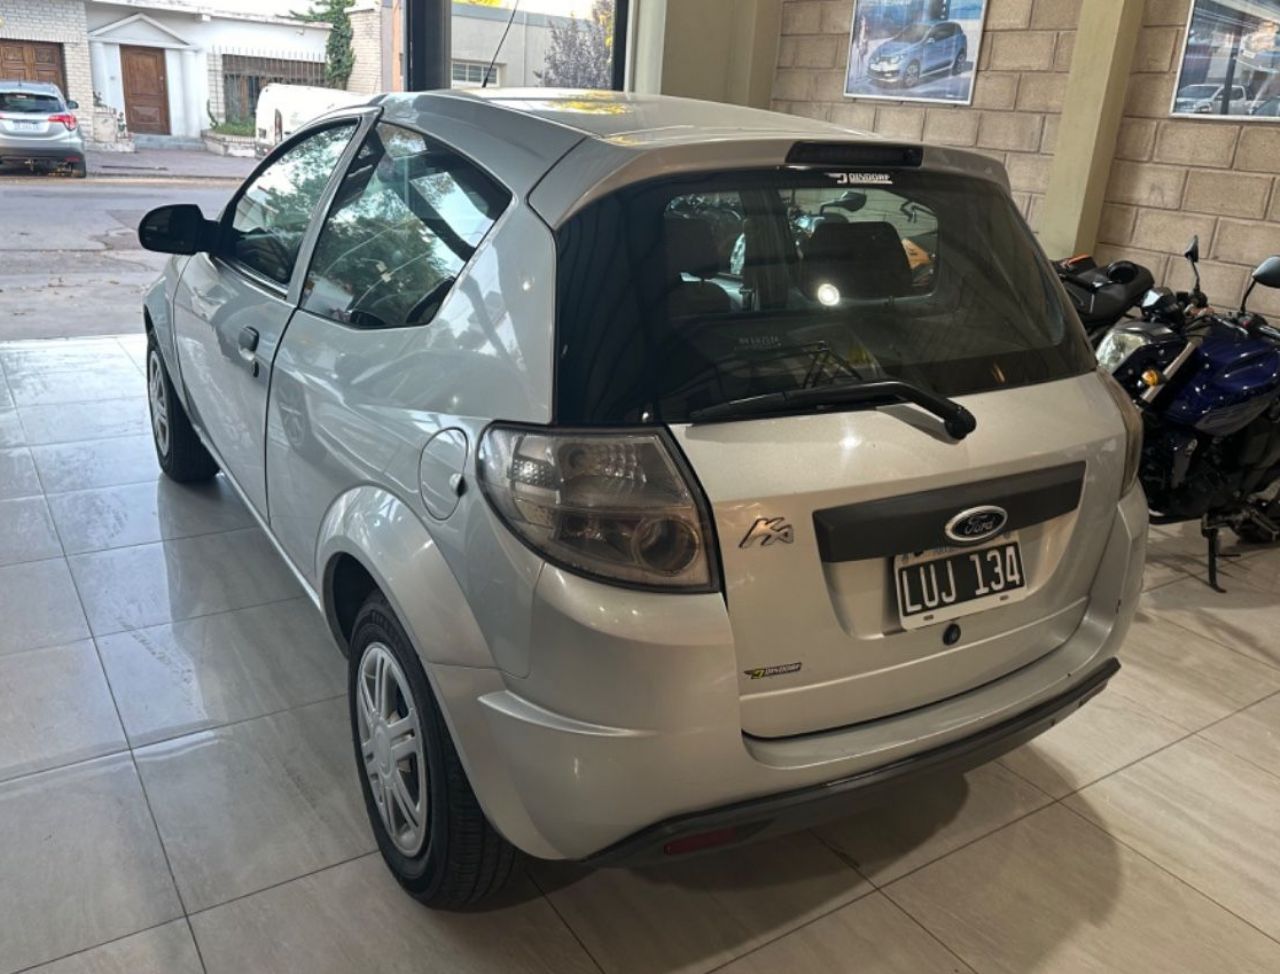 Ford Ka Usado Financiado en Mendoza, deRuedas